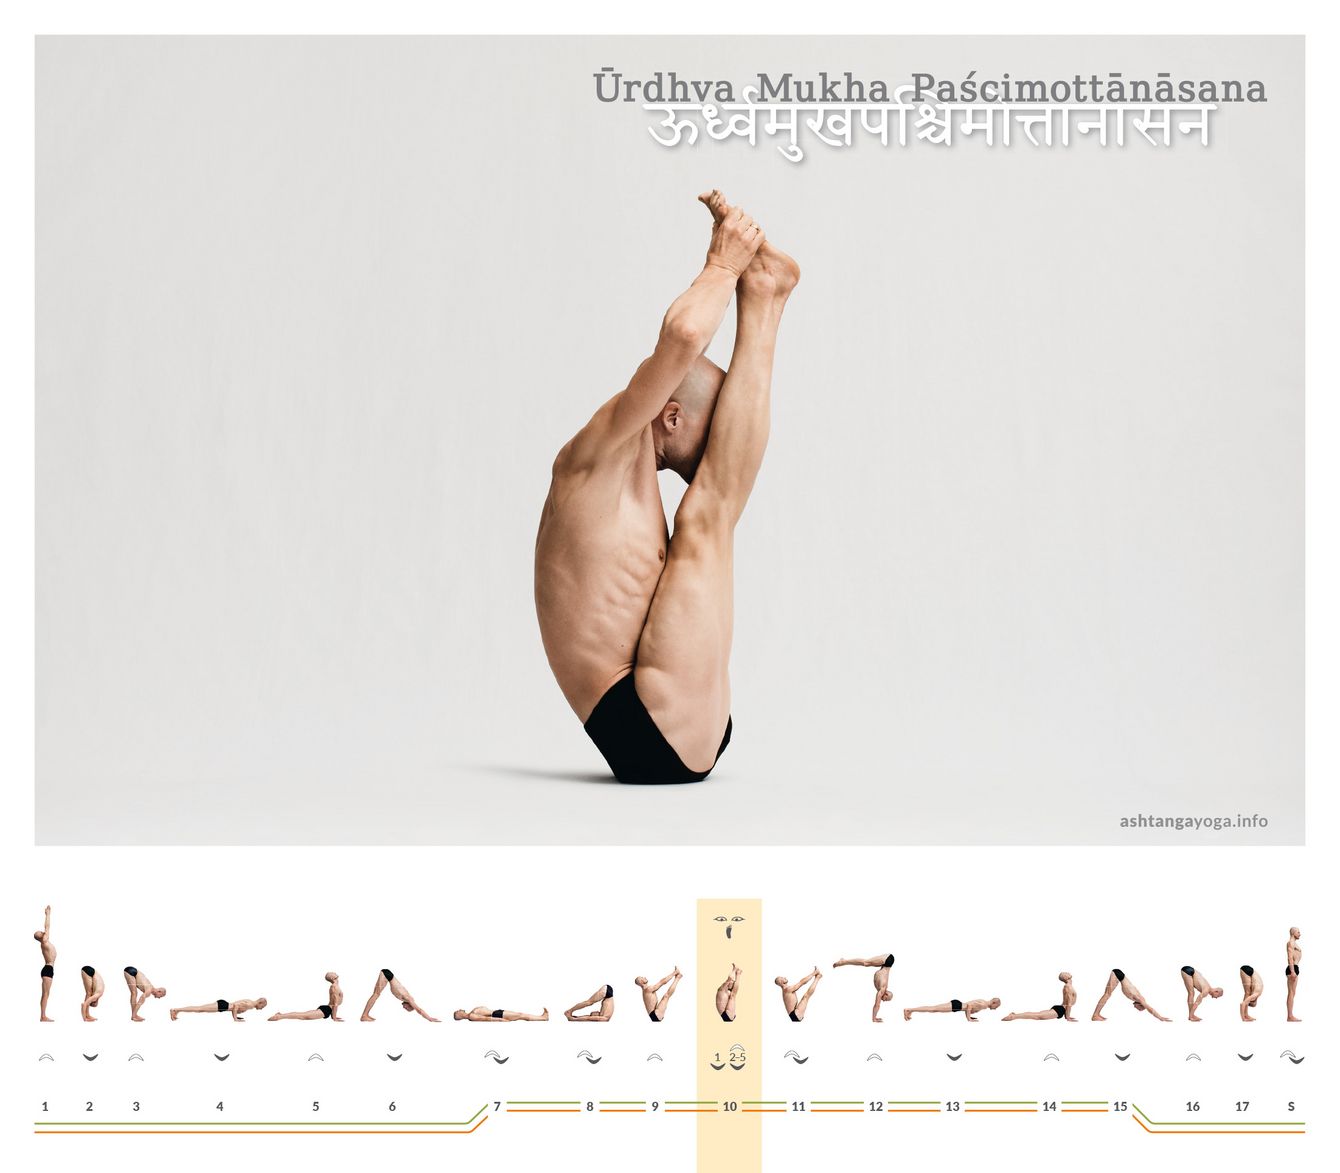 Urdhva Mukha Paschimottanasana ist eine Vorbeuge mit geschlossenen Beinen, wobei der gesamte Körper nach oben weist, während Du auf dem Becken balancierst - nach oben gerichtete Dehnung der Körperrückseite.